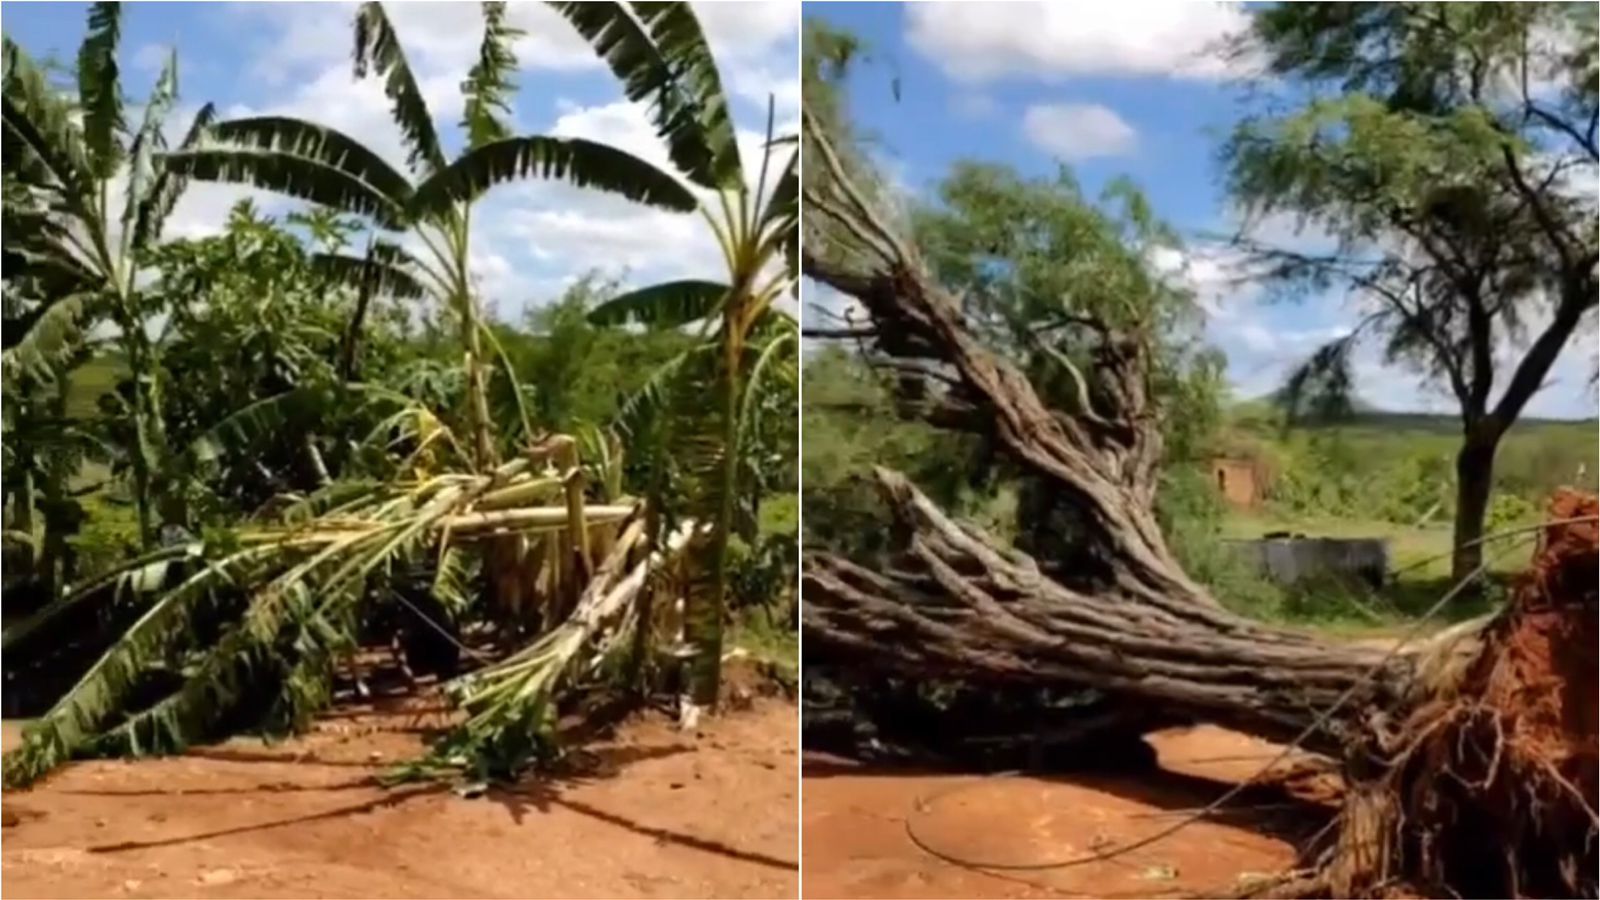 Chuva causa estragos na zona rural de Santa Terezinha-PB, derruba árvores e deixa comunidade sem energia elétrica; veja vídeo